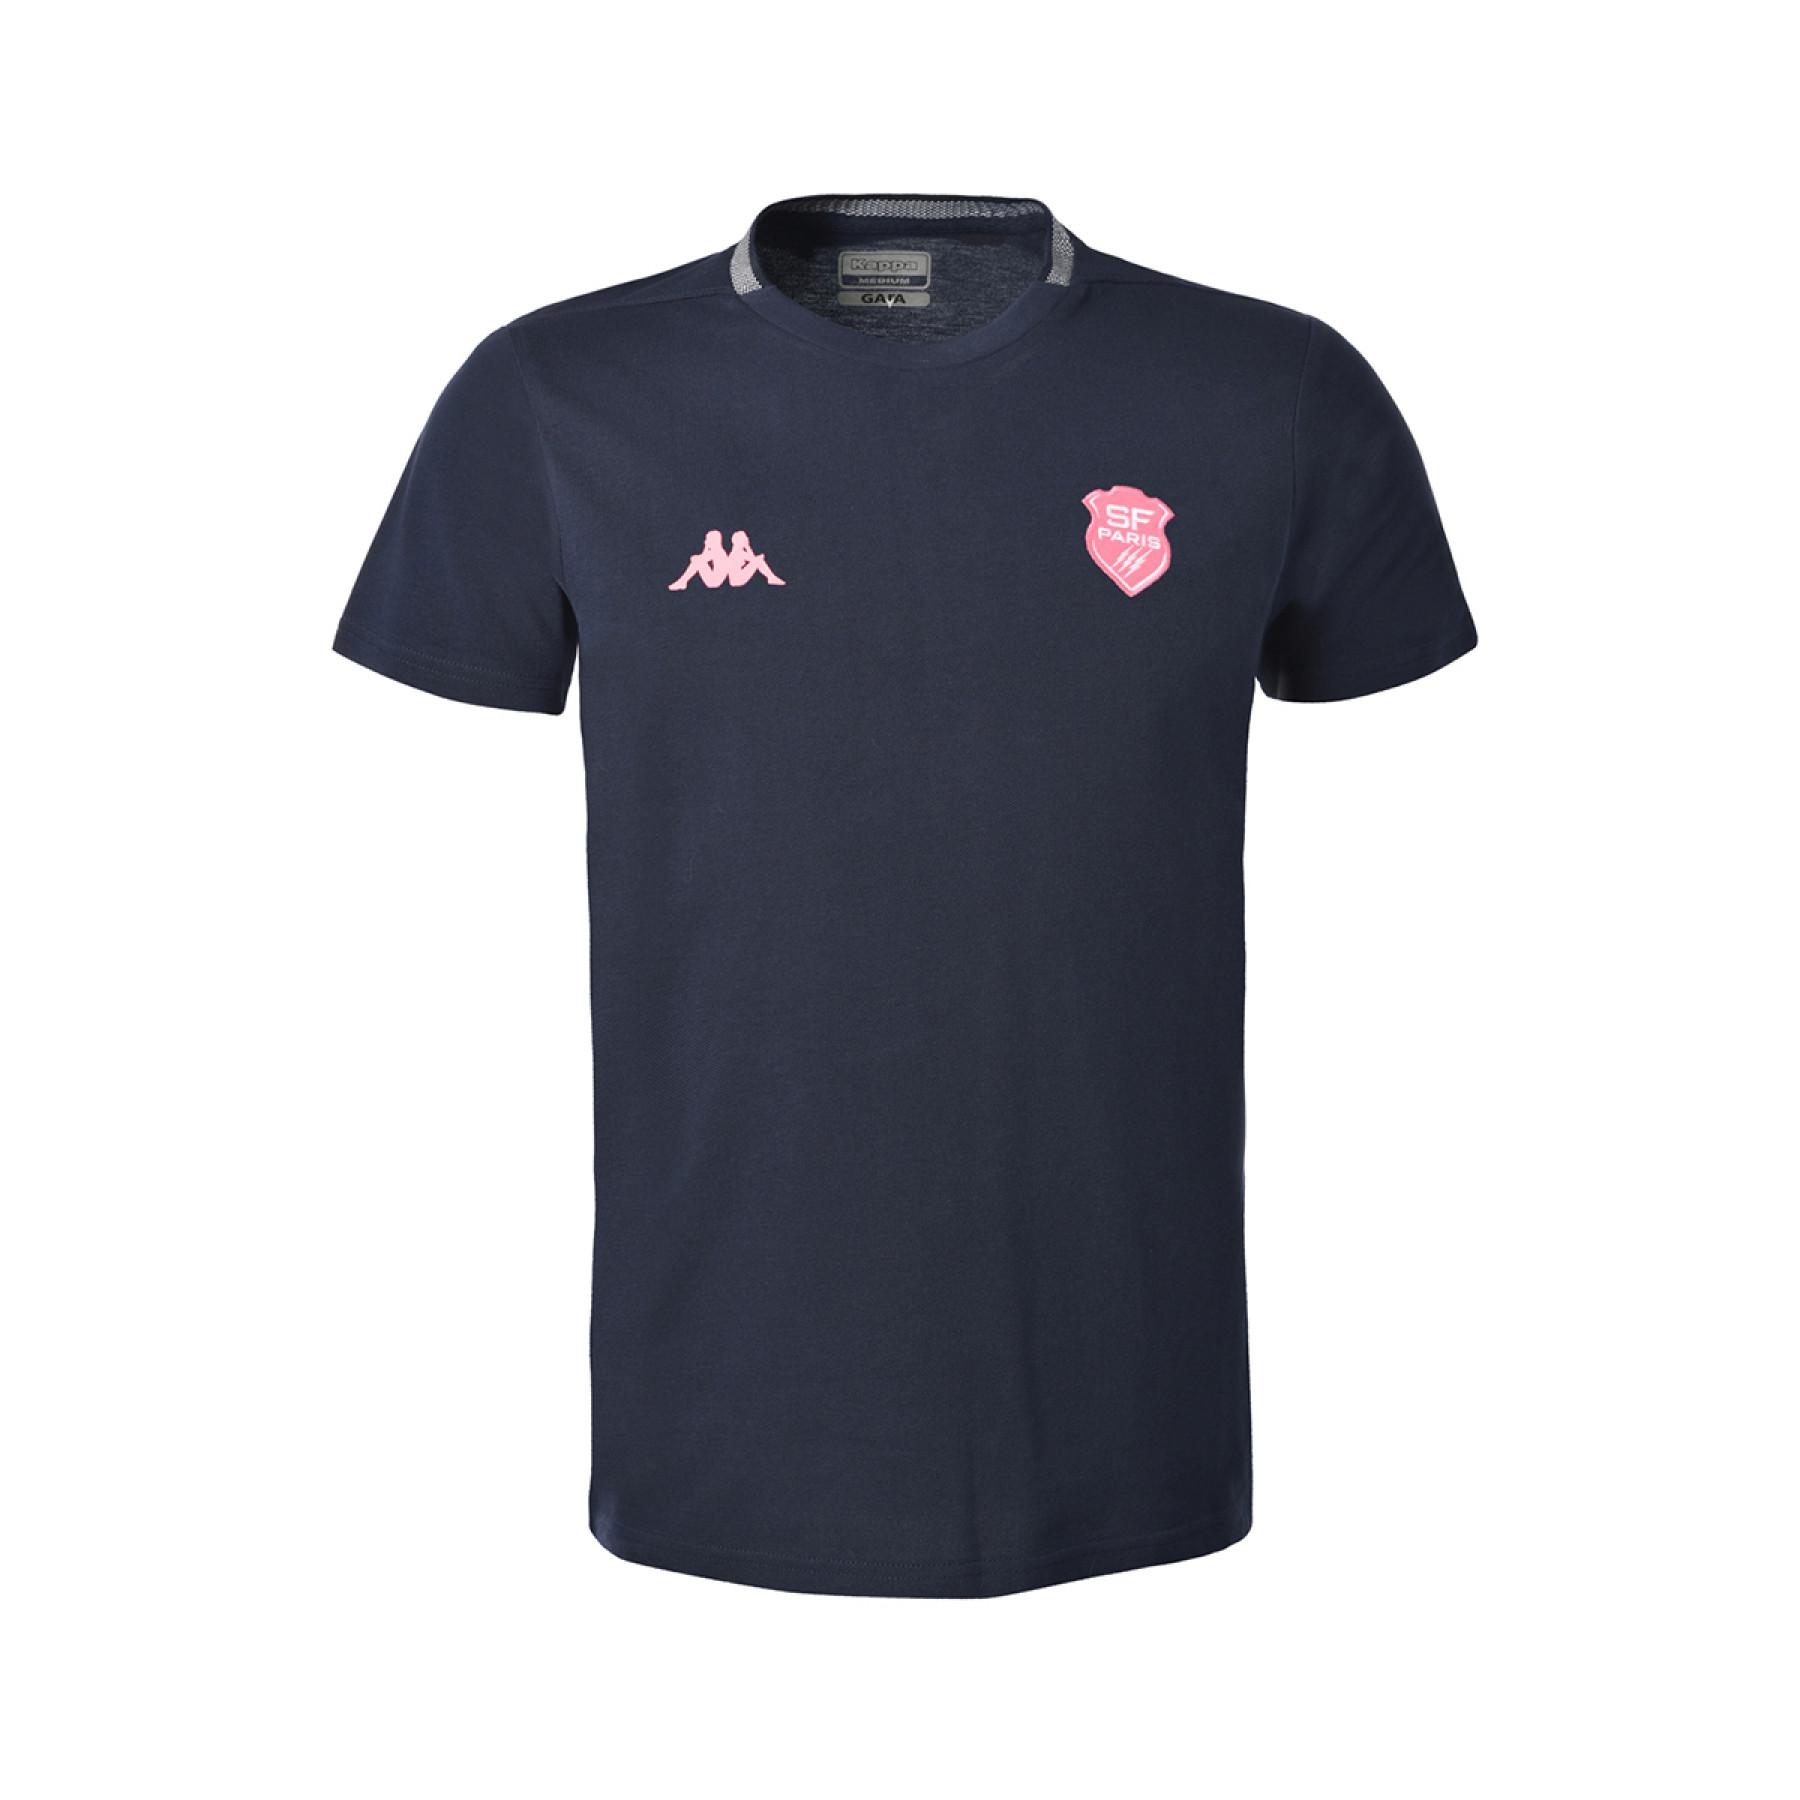 Kinder-T-Shirt Stade Français 2020/21 angelico